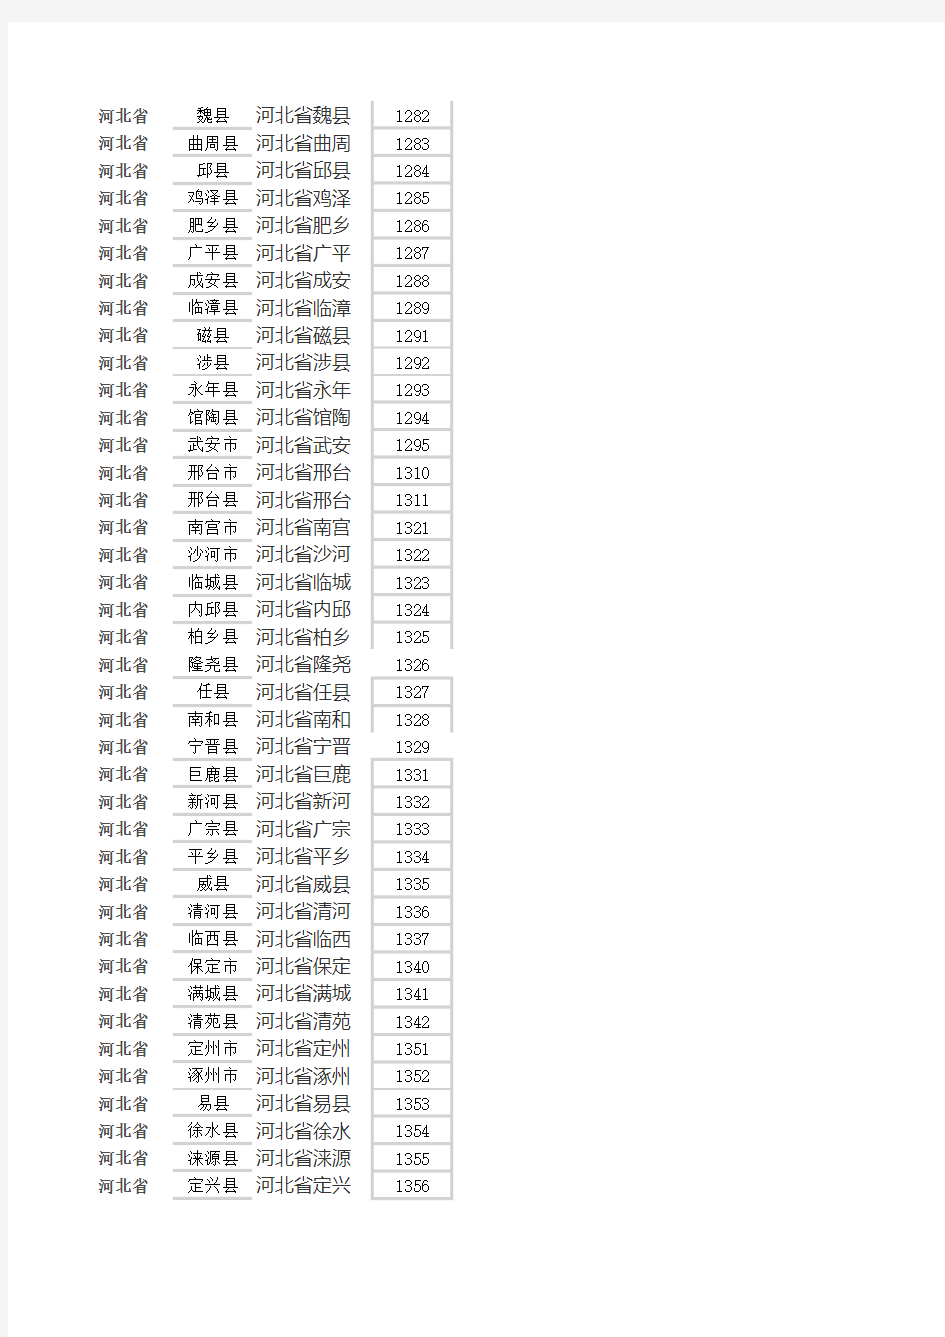 2019中国城市代码对照表